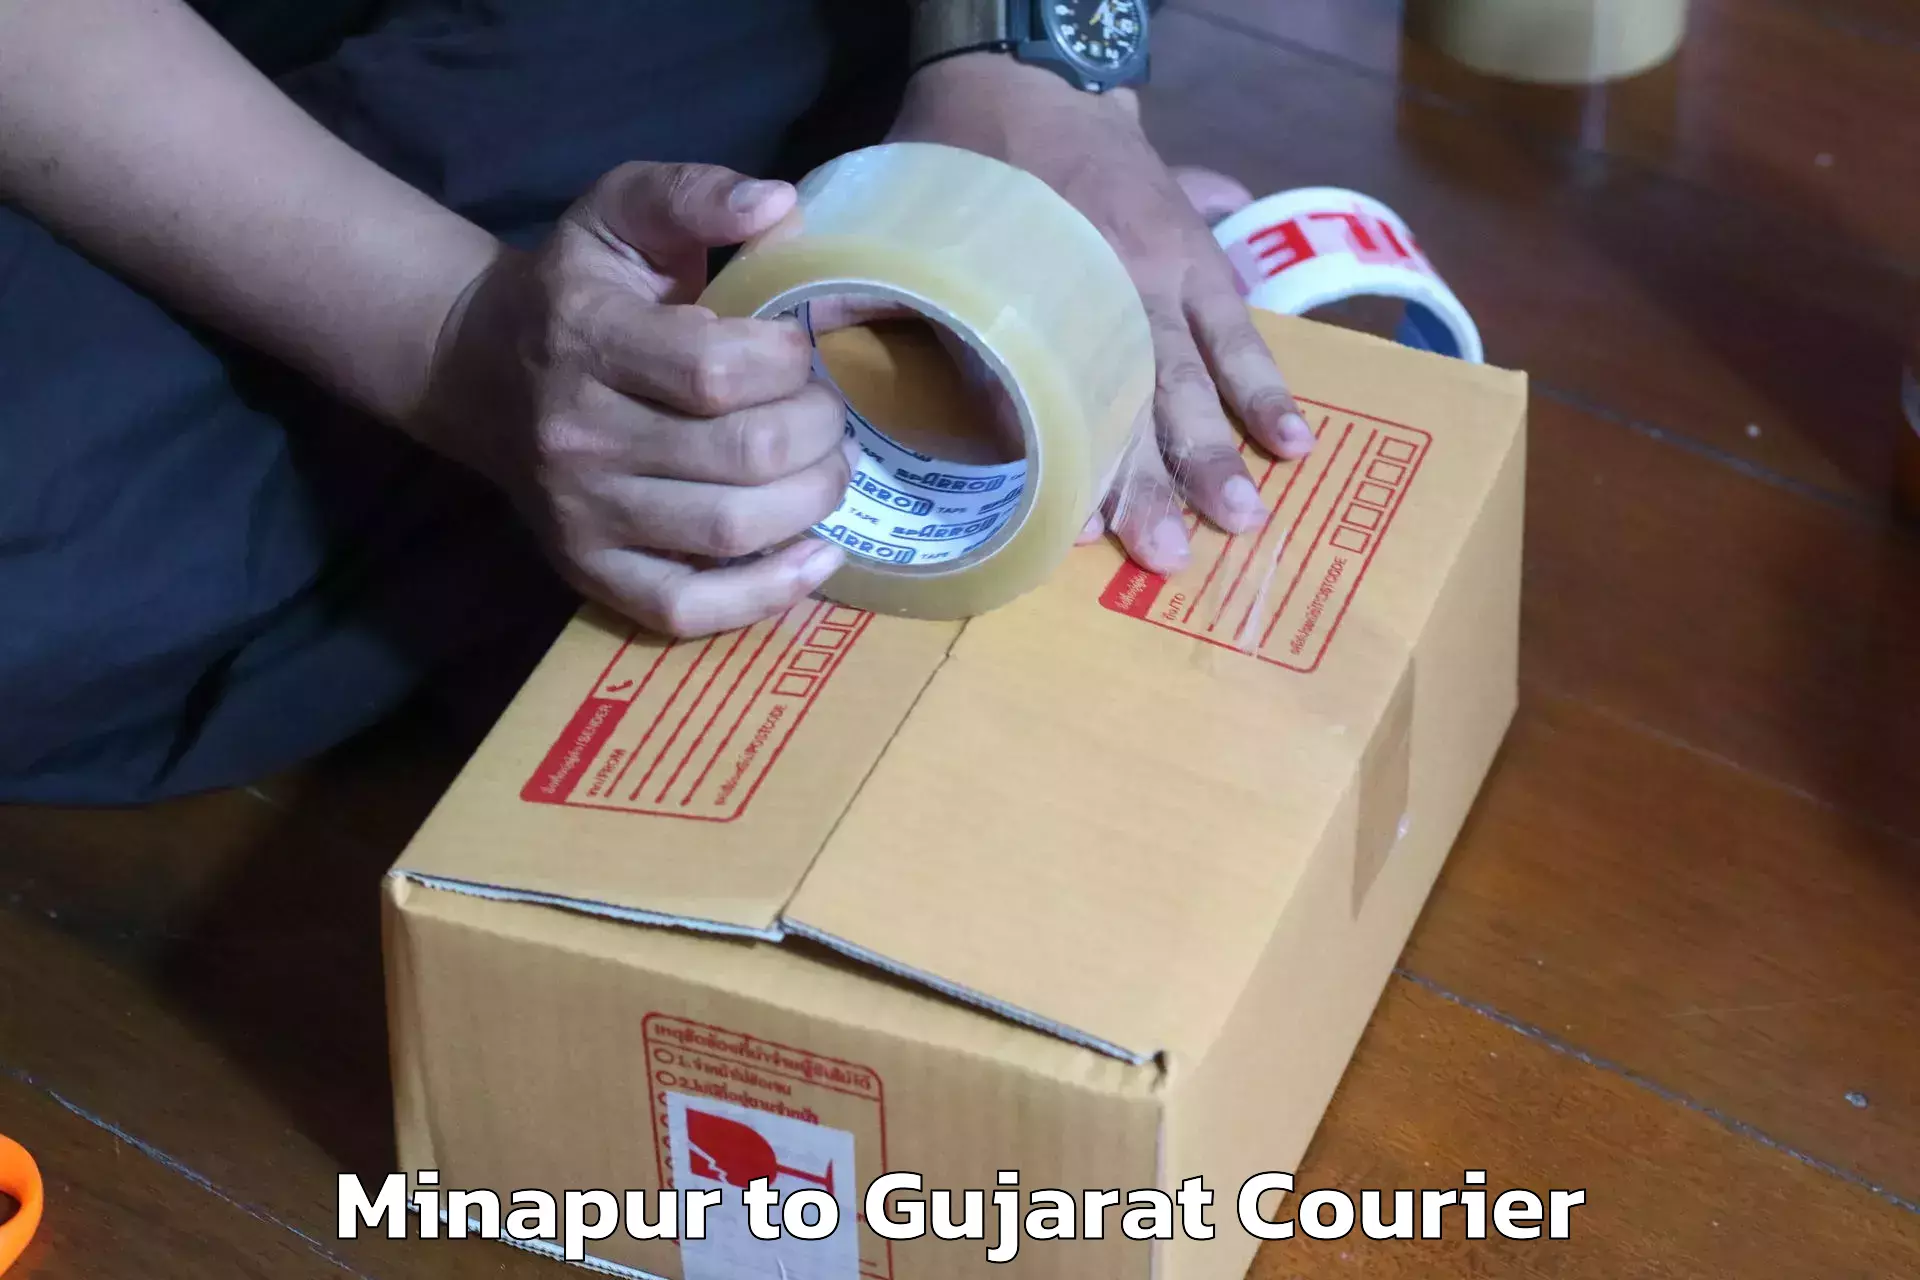 Furniture transport specialists Minapur to Gujarat